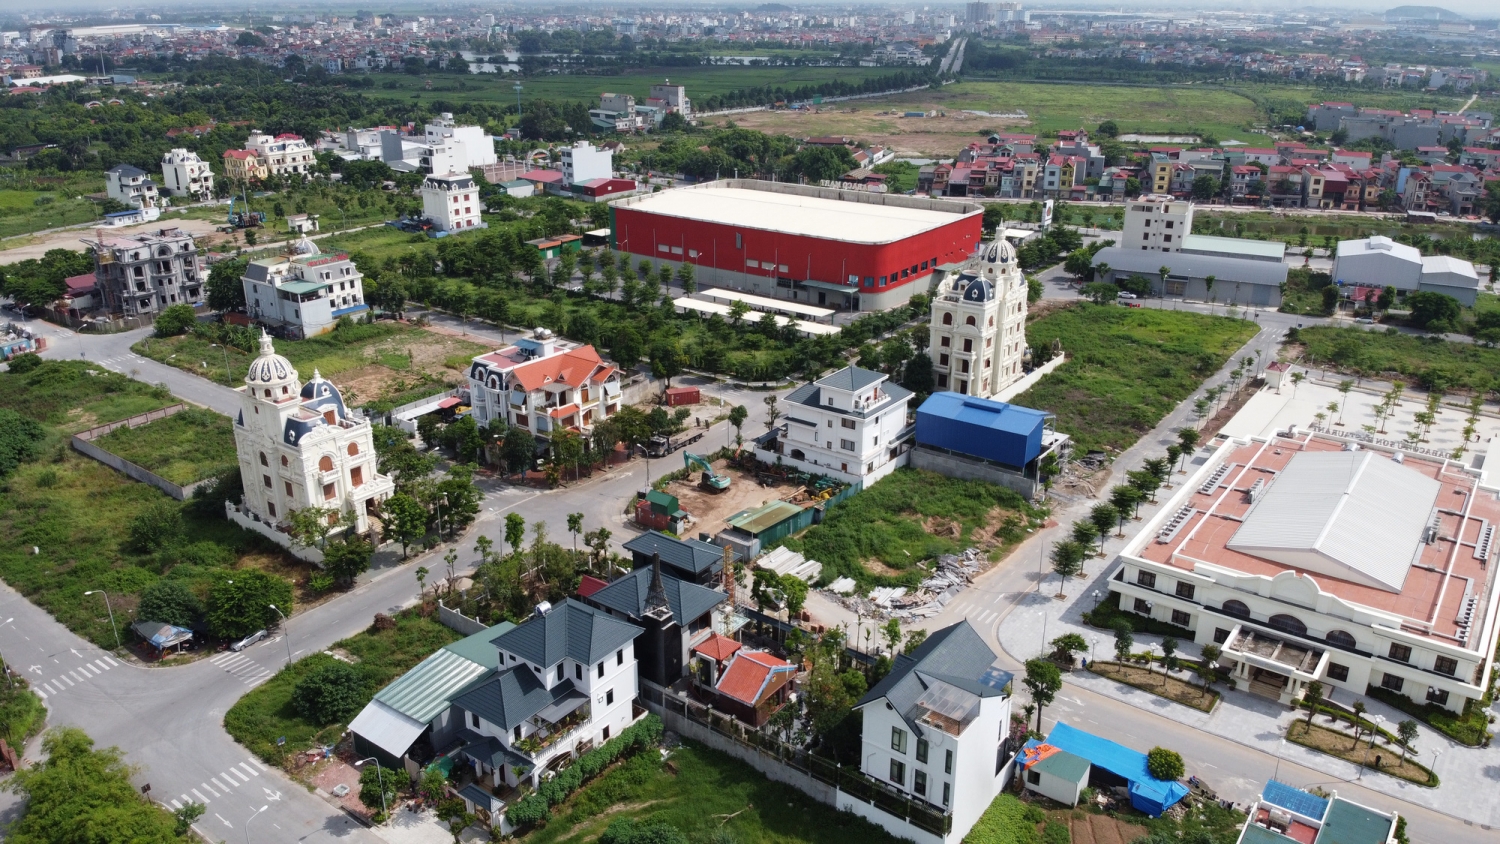 Tin nhanh bất động sản ngày 18/11: Tập đoàn Panko Hàn Quốc muốn đầu tư khu đô thị thông minh và sân golf 350 ha tại Quảng Nam